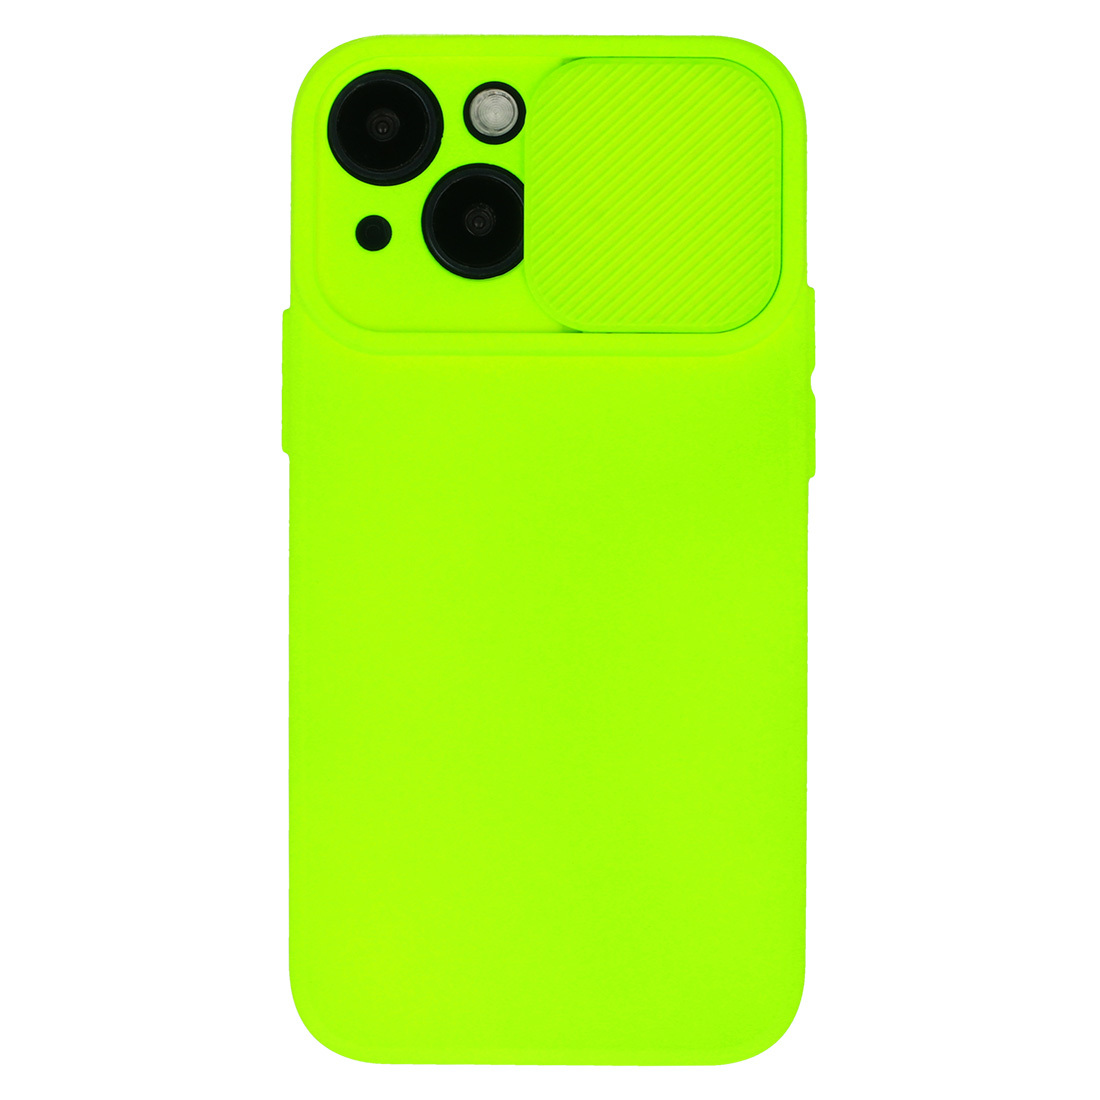 Pokrowiec etui z elastycznego TPU Camshield Soft Case limonkowe APPLE iPhone 11 Pro Max / 2